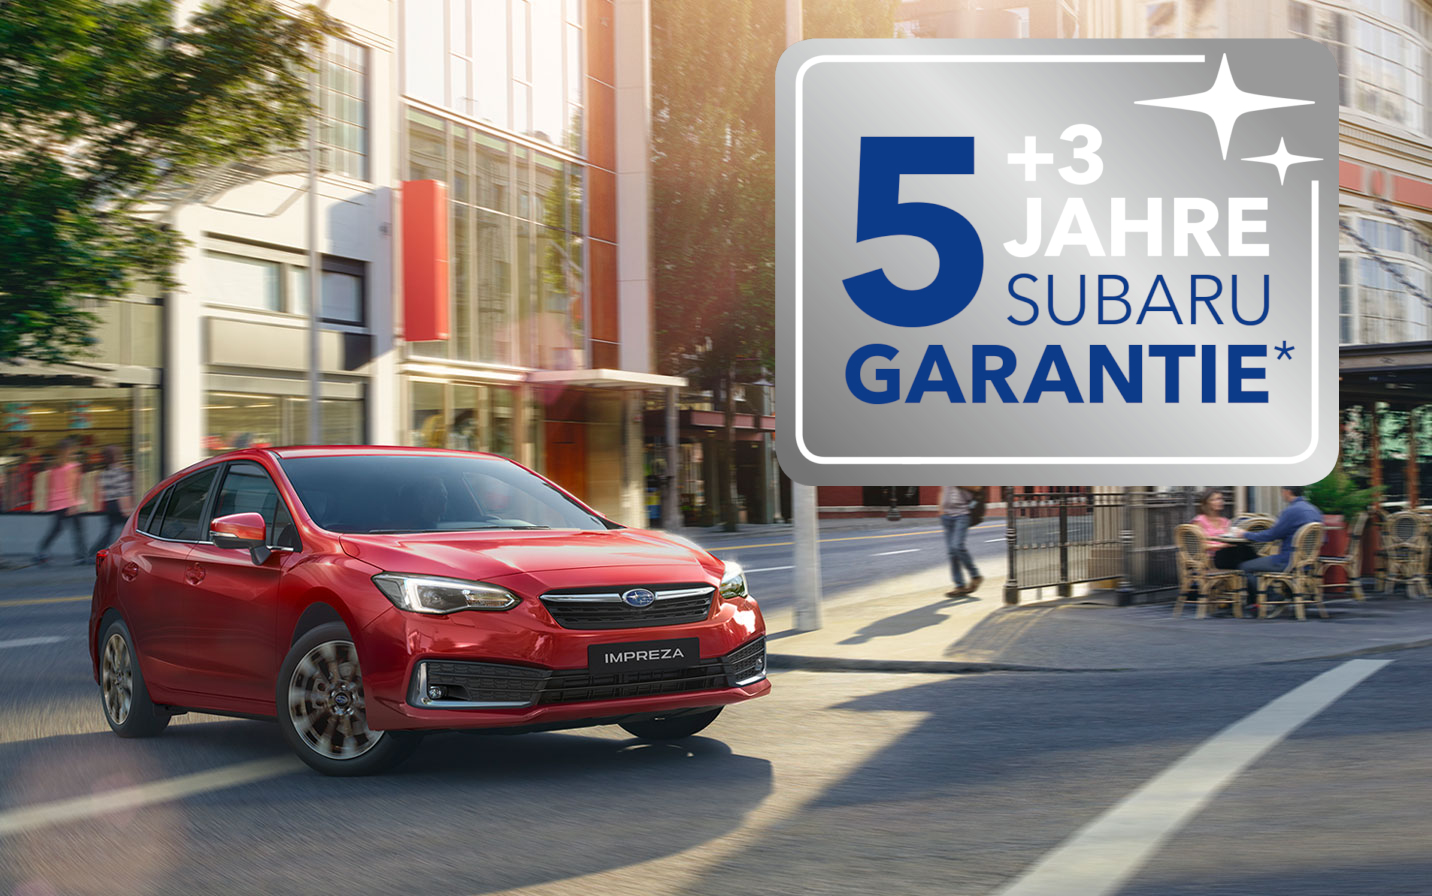 5 +3 Jahre Subaru Garantie